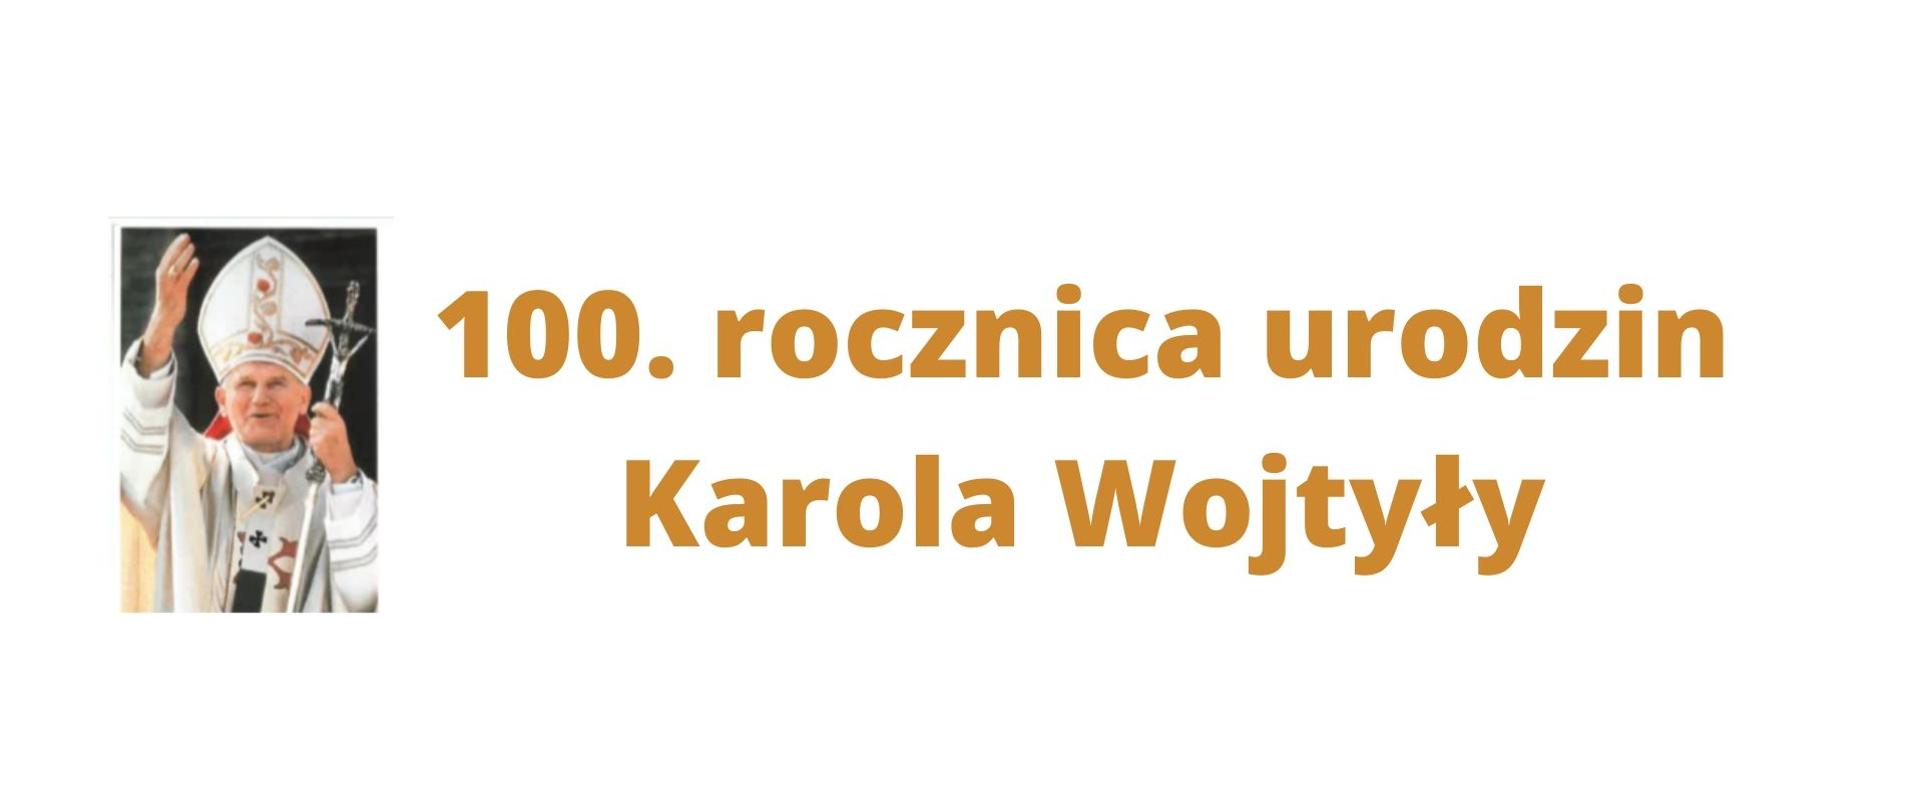 100. rocznica Karola Wojtyły - przesłanie Wojewody Mazowieckiego Konstantego Radziwiłła